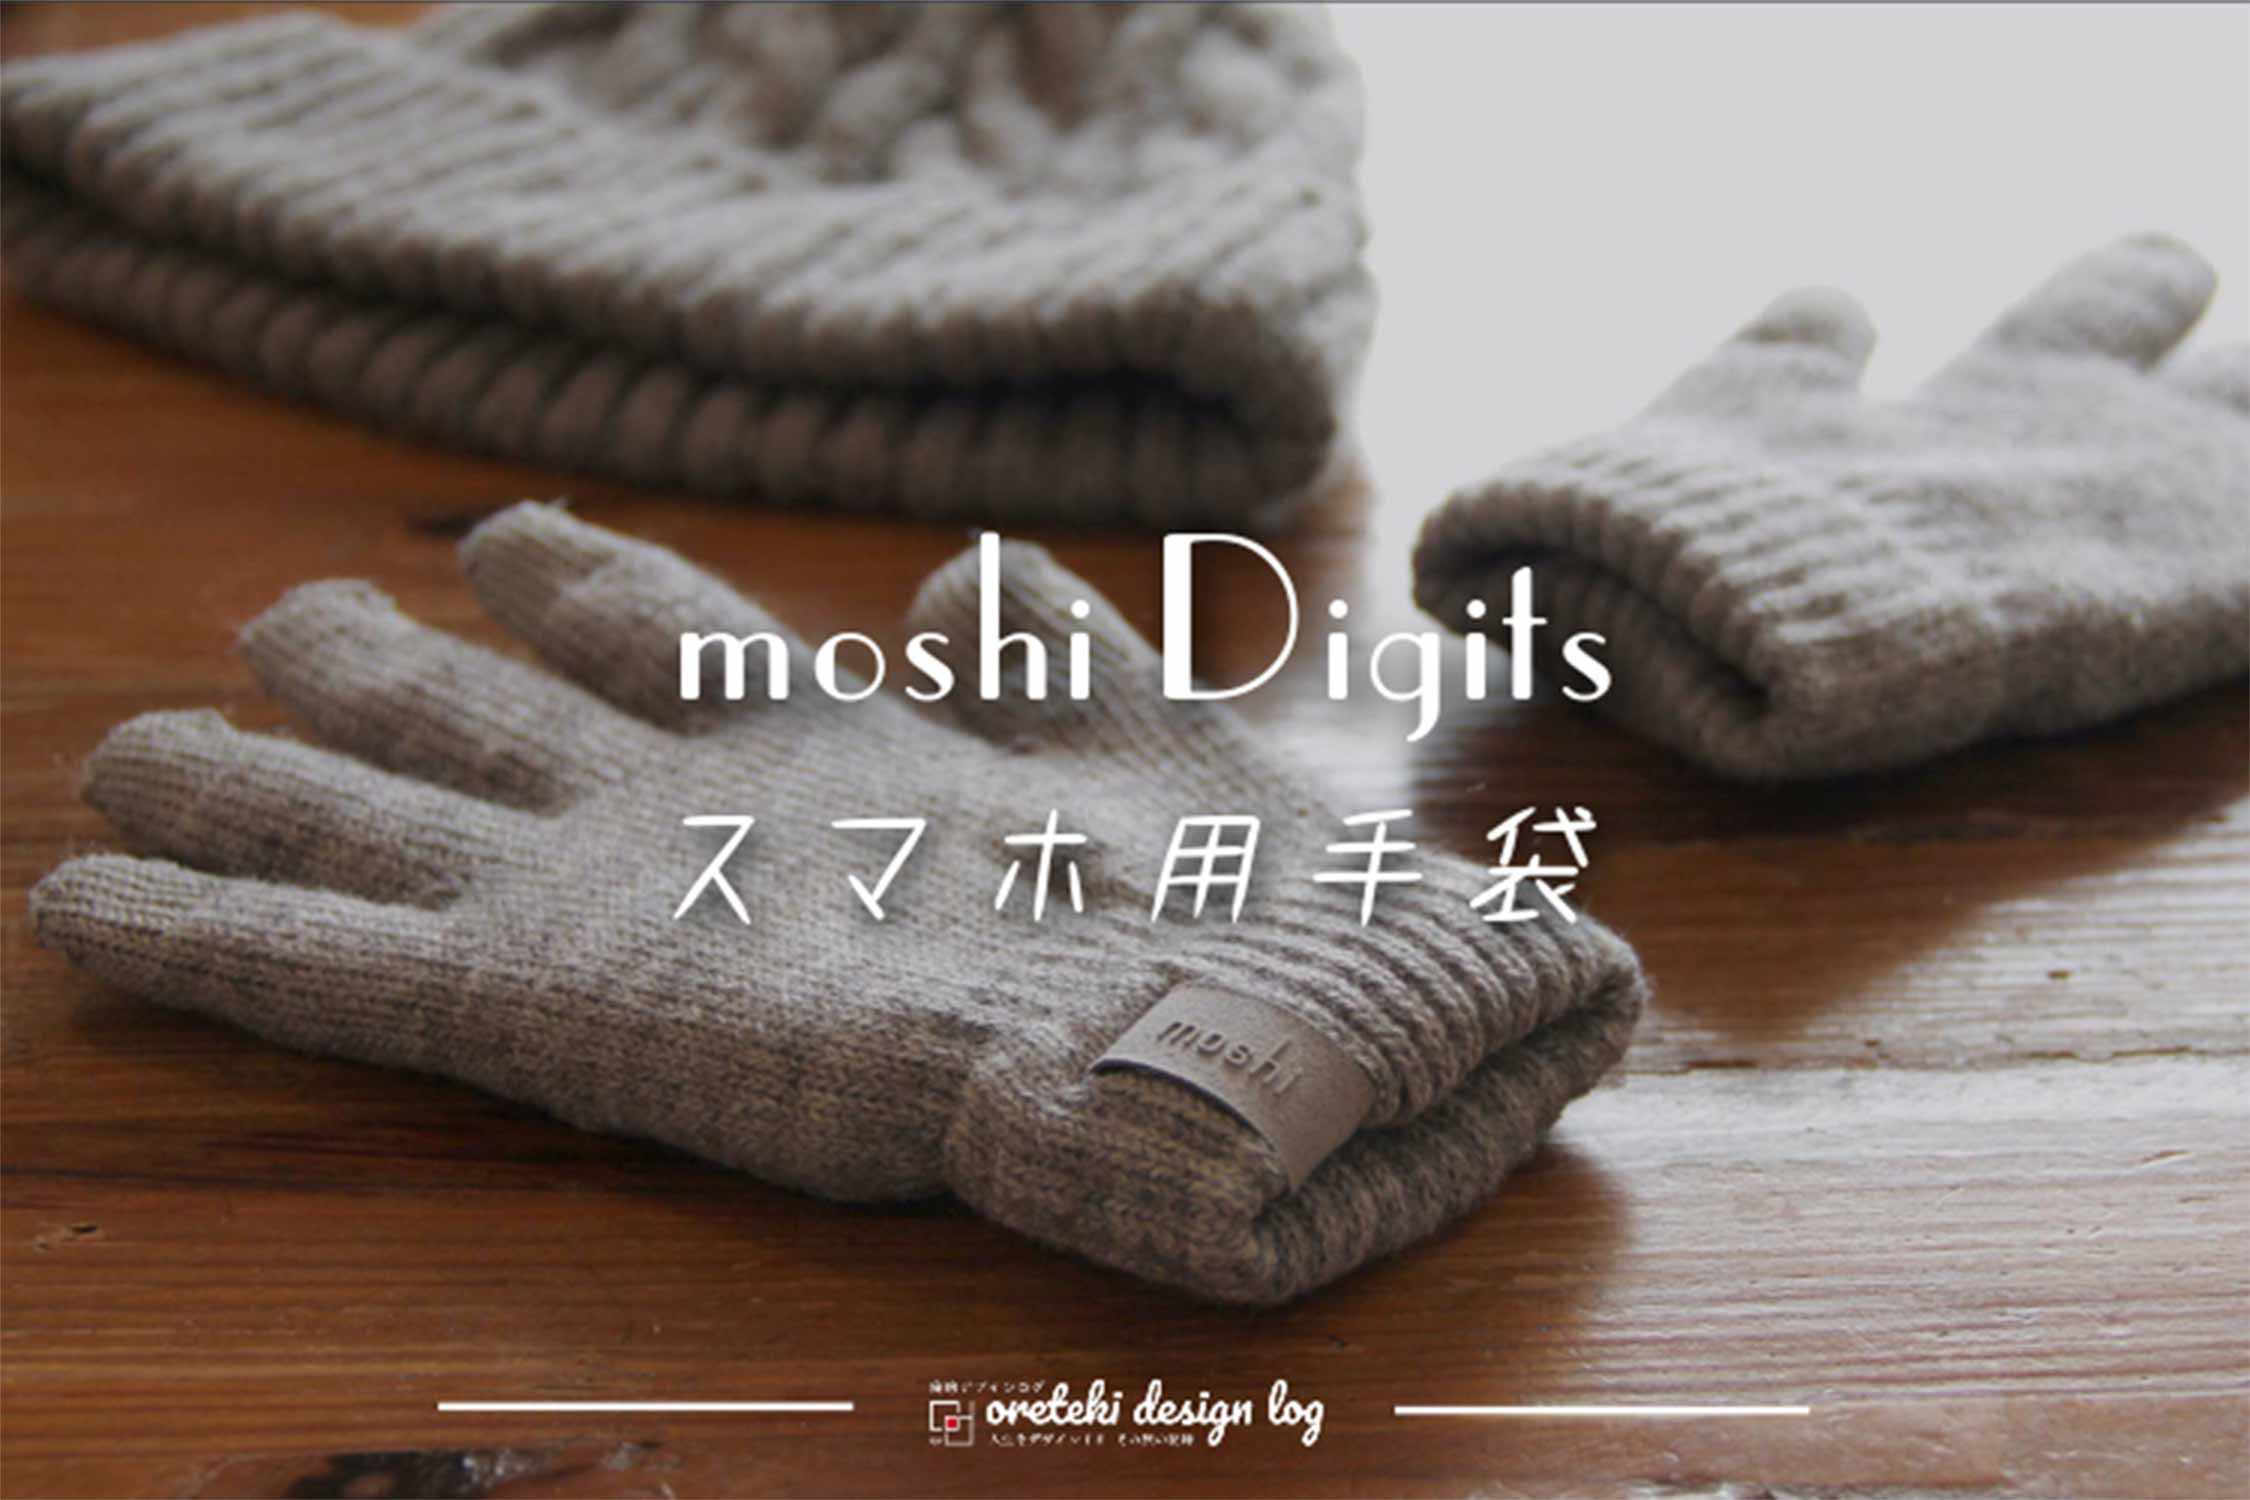 moshi Digits スマホ用手袋 記事 アイキャッチ